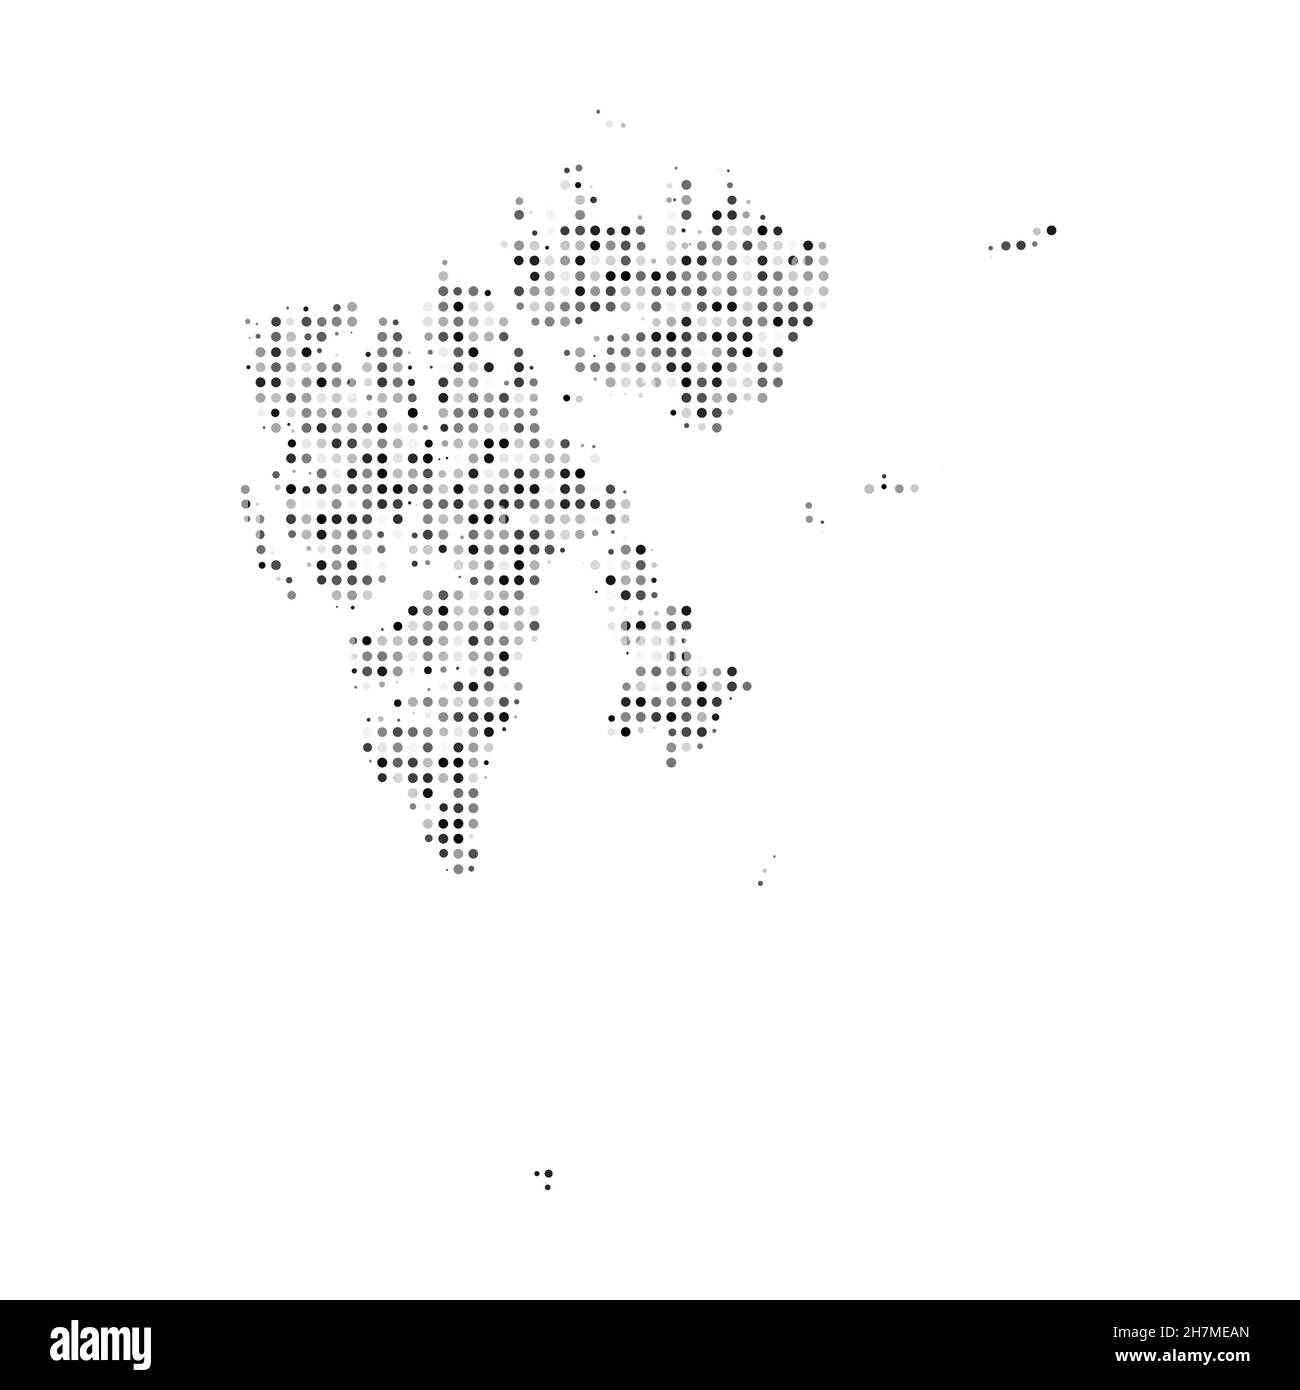 Abstrakte gepunktete schwarz-weiße Halbtoneffekt-Vektorkarte von Svalbard und Jan Mayen. Landeskarte digitale gepunktete Design-Vektor-Illustration. Stock Vektor